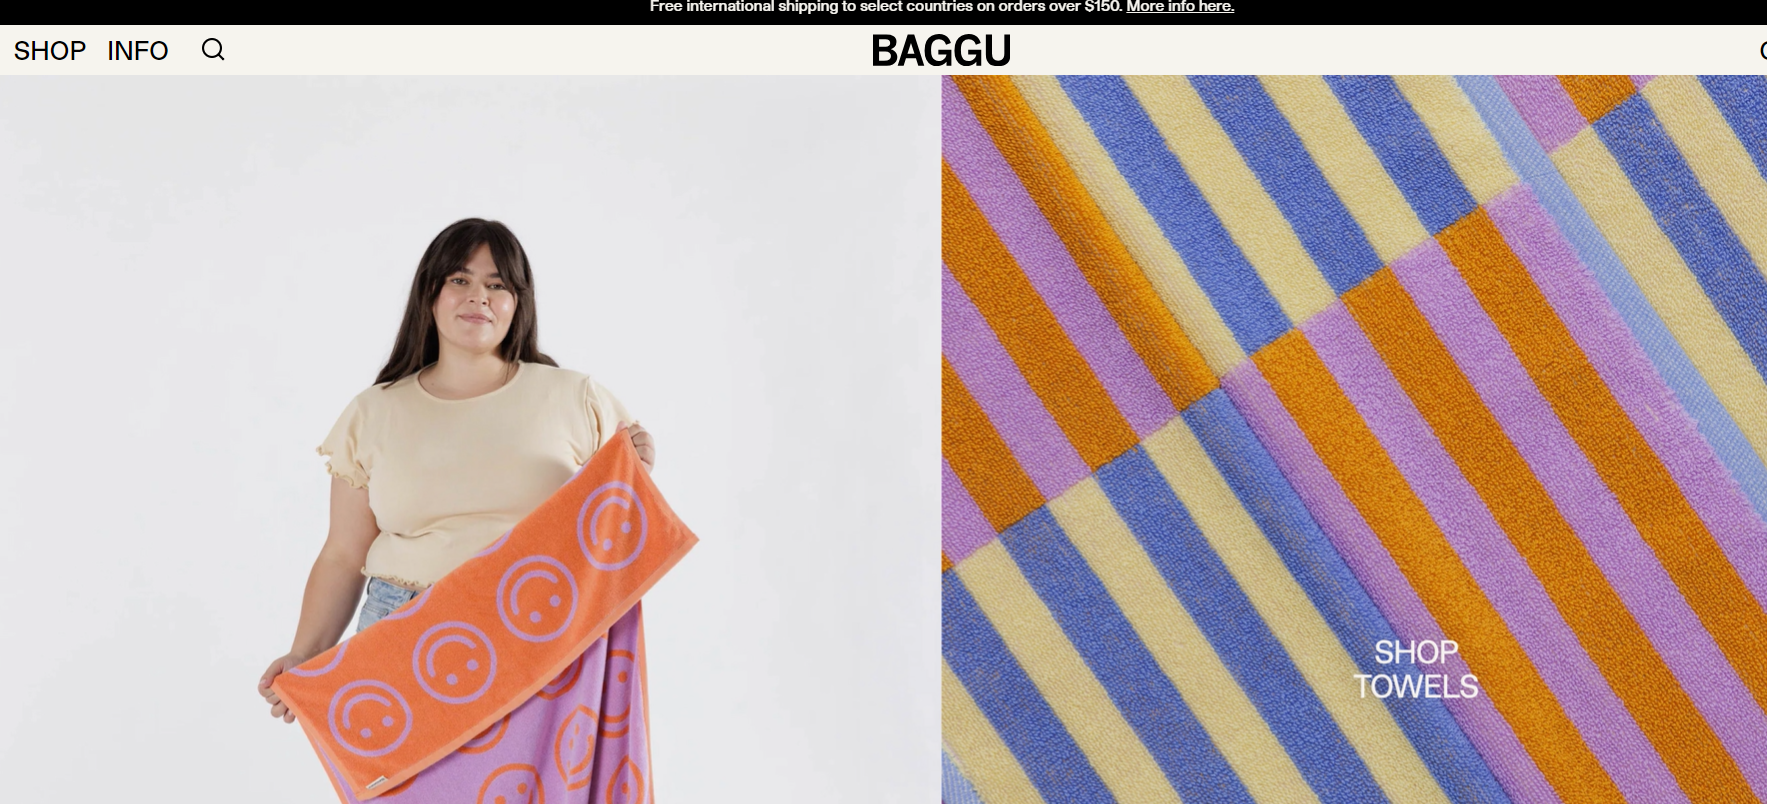 Baggu website